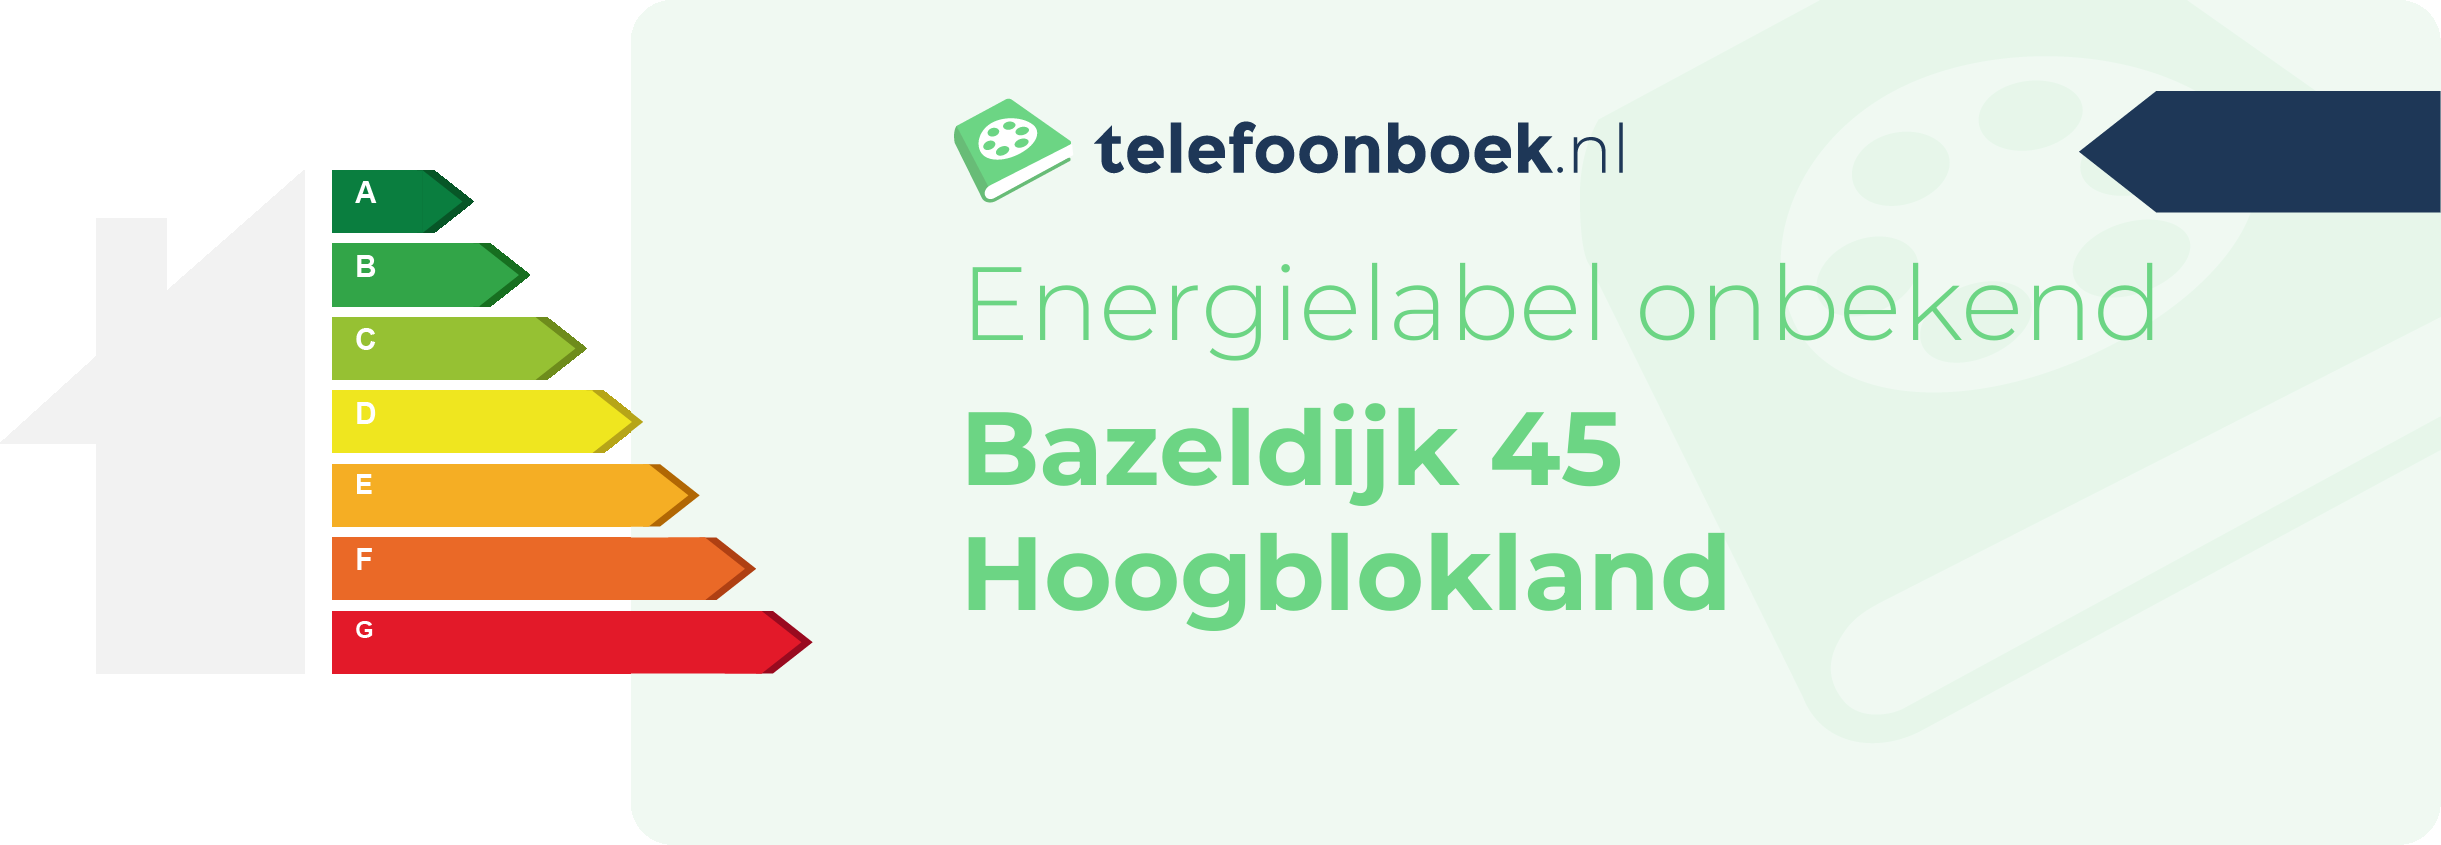 Energielabel Bazeldijk 45 Hoogblokland